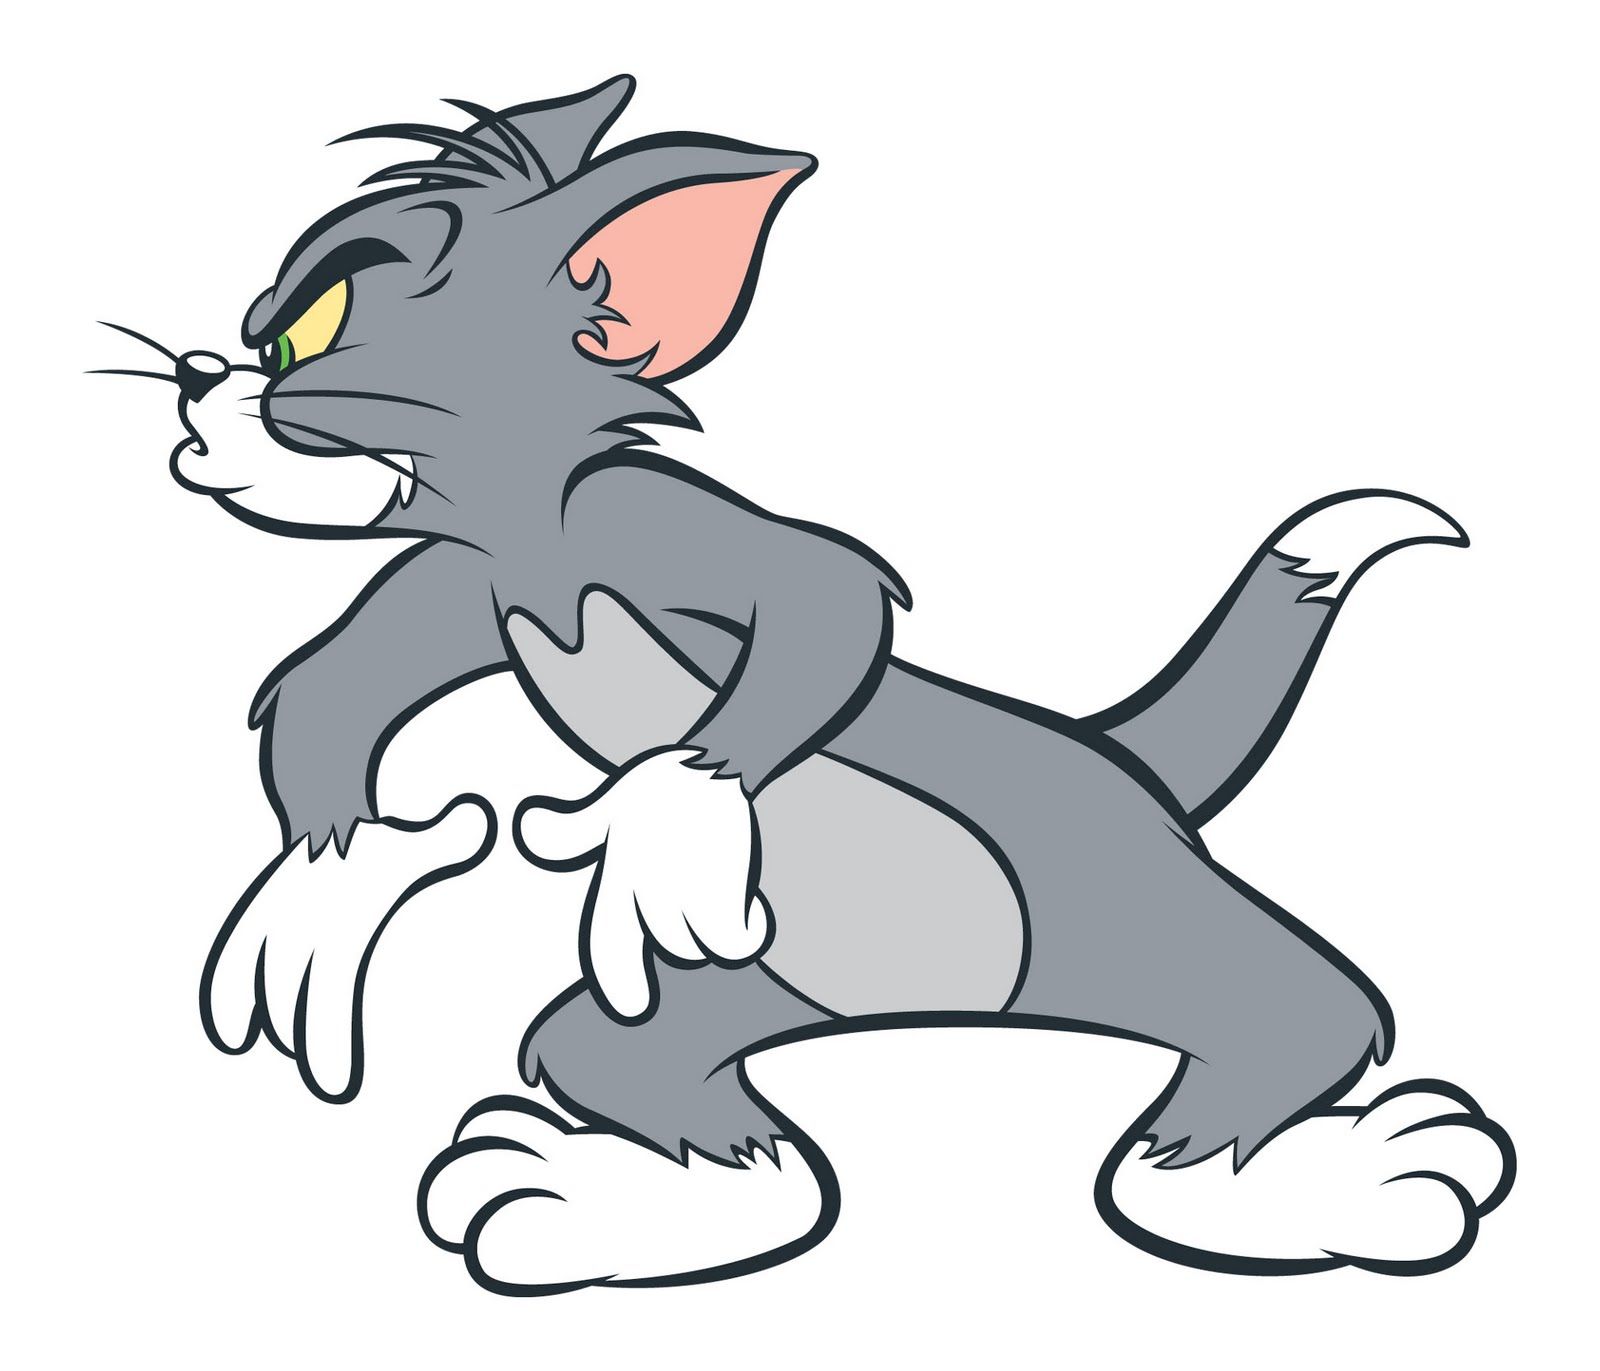 Tom Cat/Gallery | Tom and Jerry Wiki | Fandom | Tom and jerry wallpapers,  Tom and jerry pictures, Tom and jerry cartoon